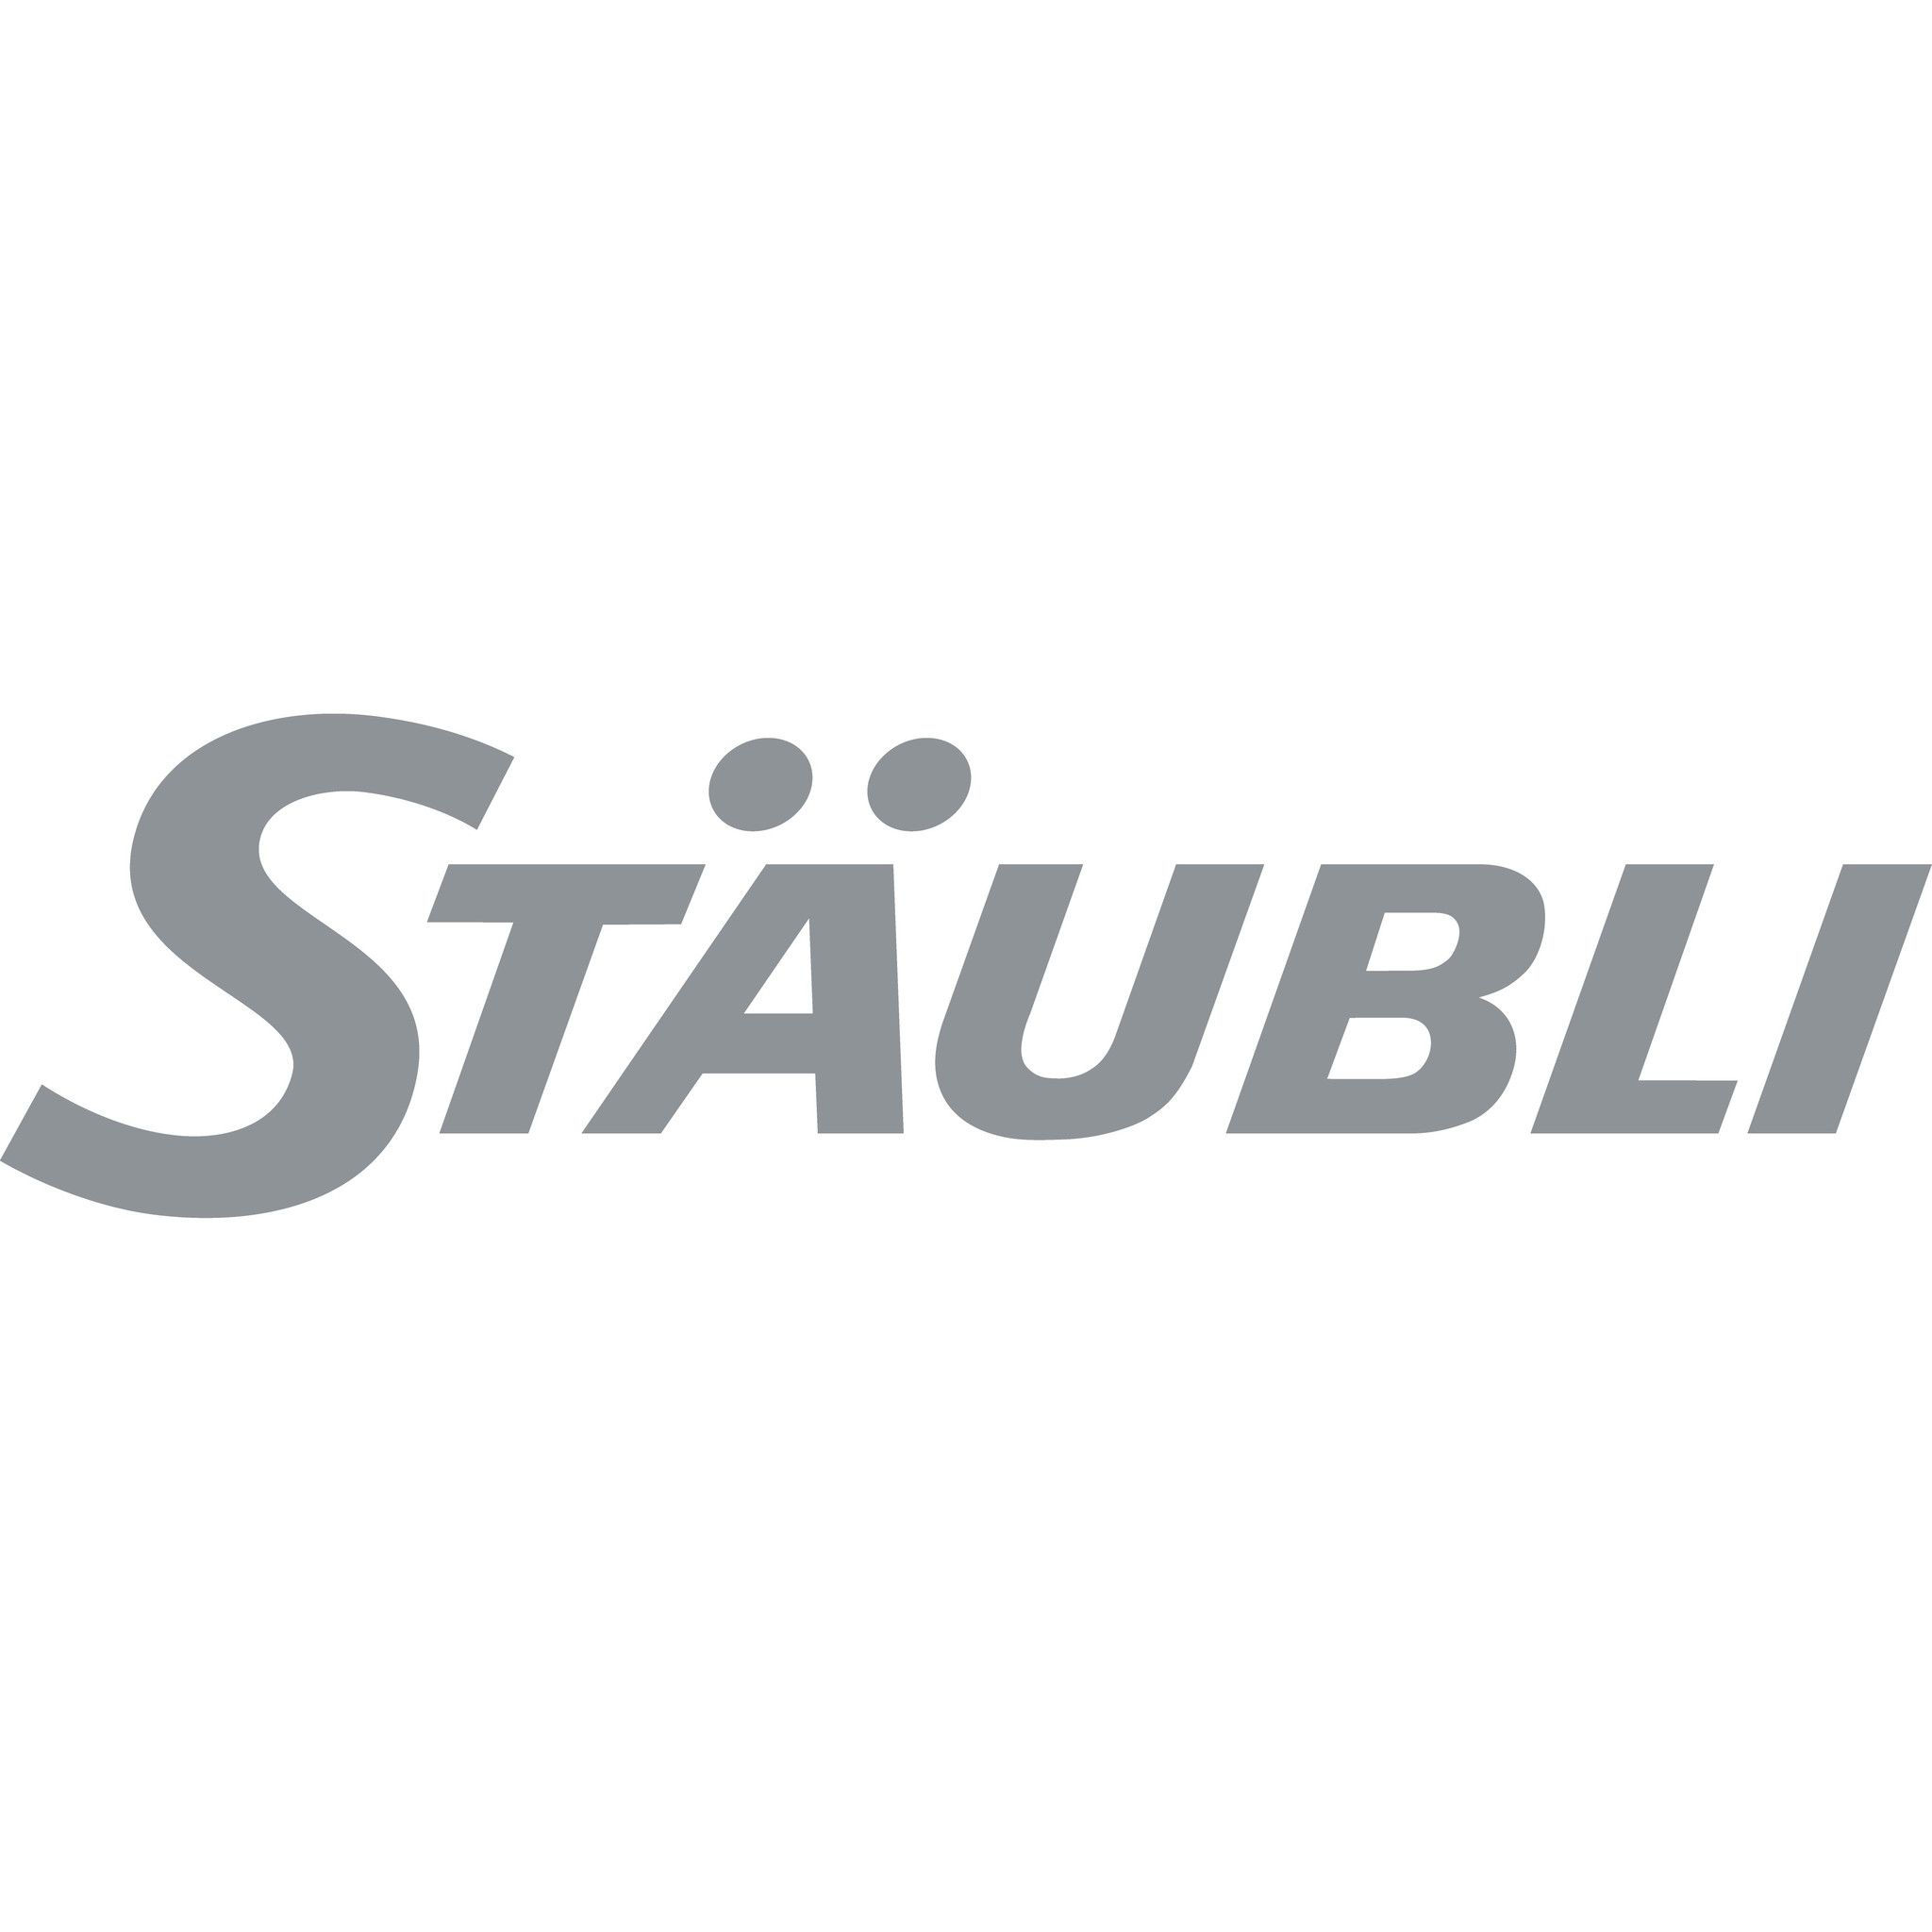 Đại lý Staubli Việt Nam - Đại lý phân phối sản phẩm Staubli tại Việt Nam